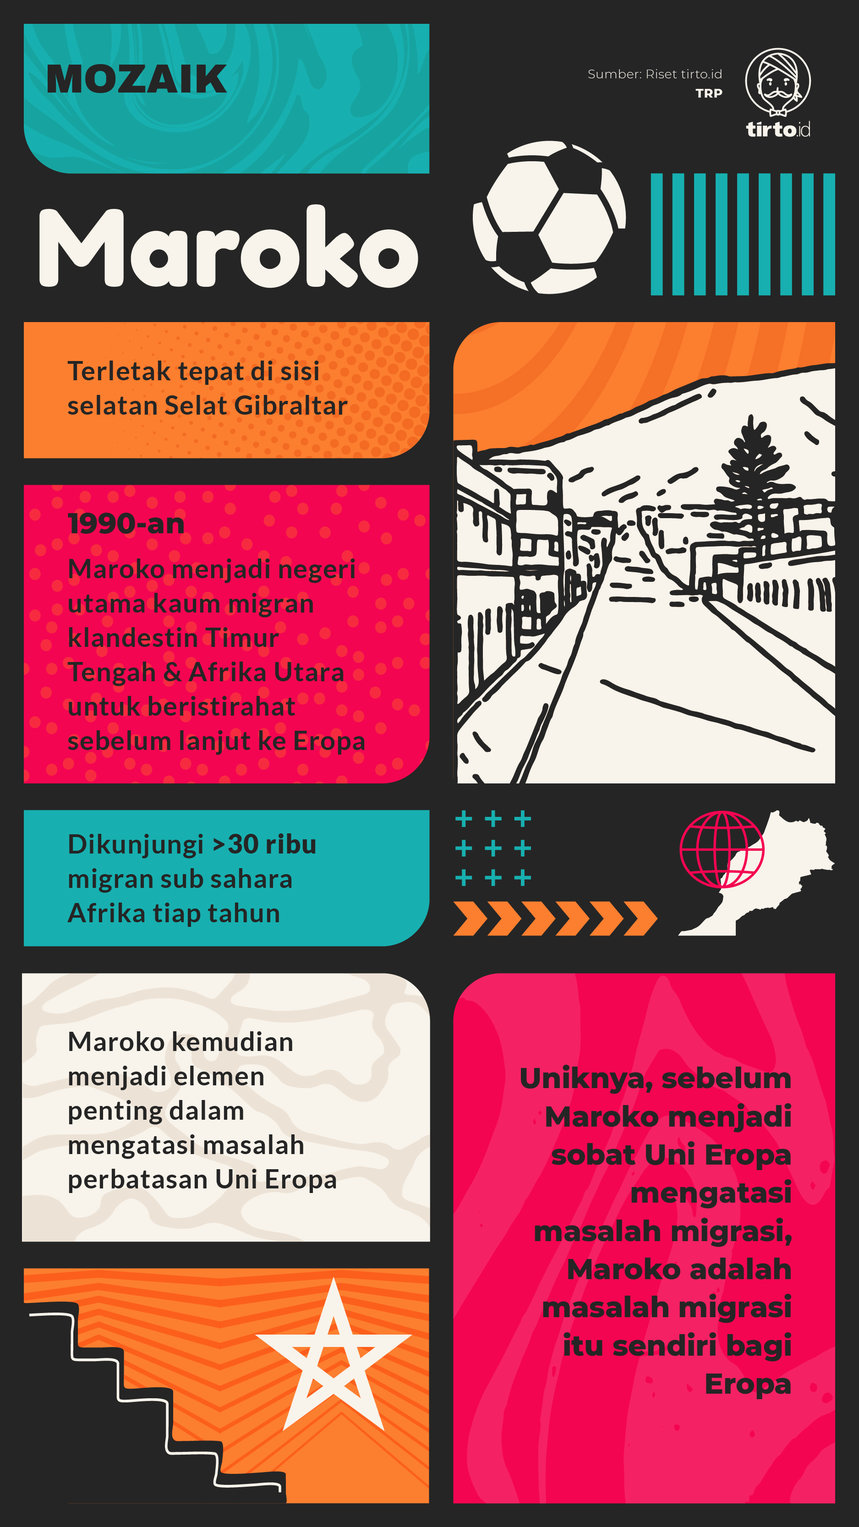 Infografik Mozaik Maroko 